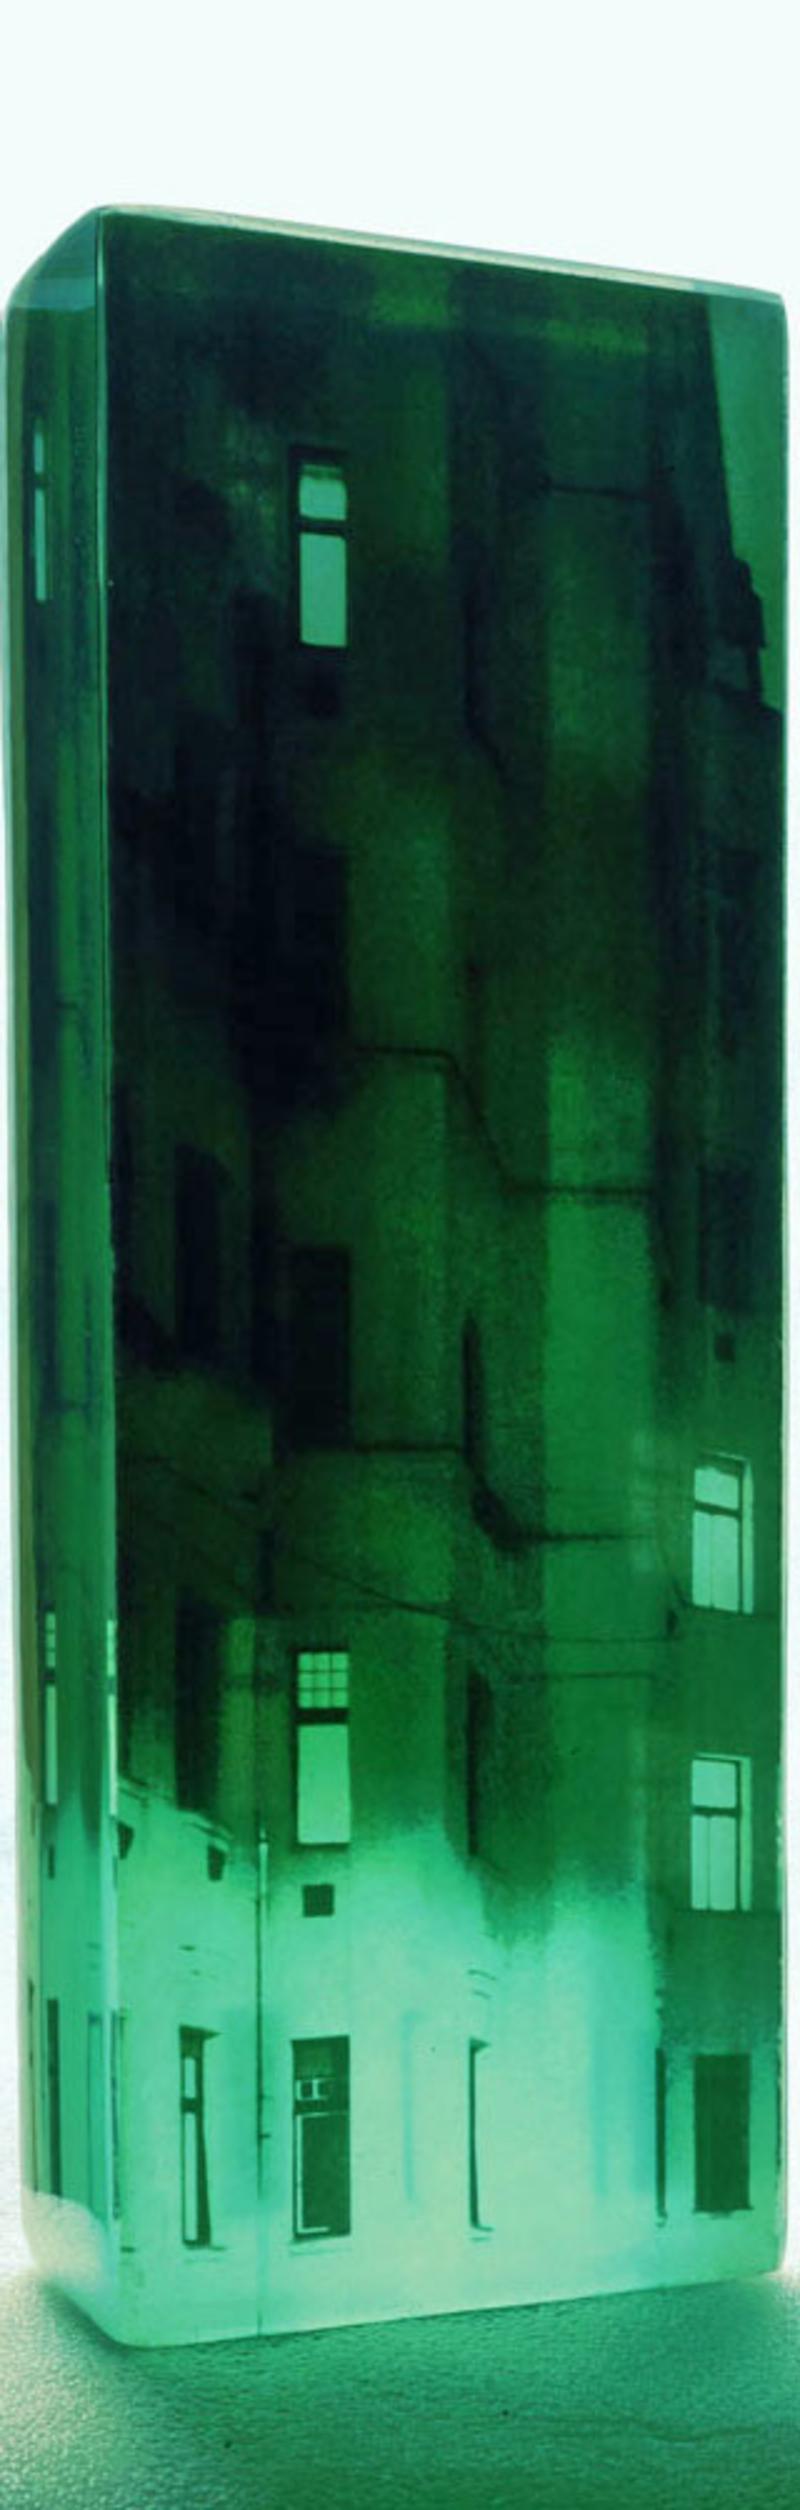 Parallele Welten – leuchtende grüne Stadt-/ Urban-Szene in skulpturalem Glas: Triptychon – Sculpture von Jeff Cunningham